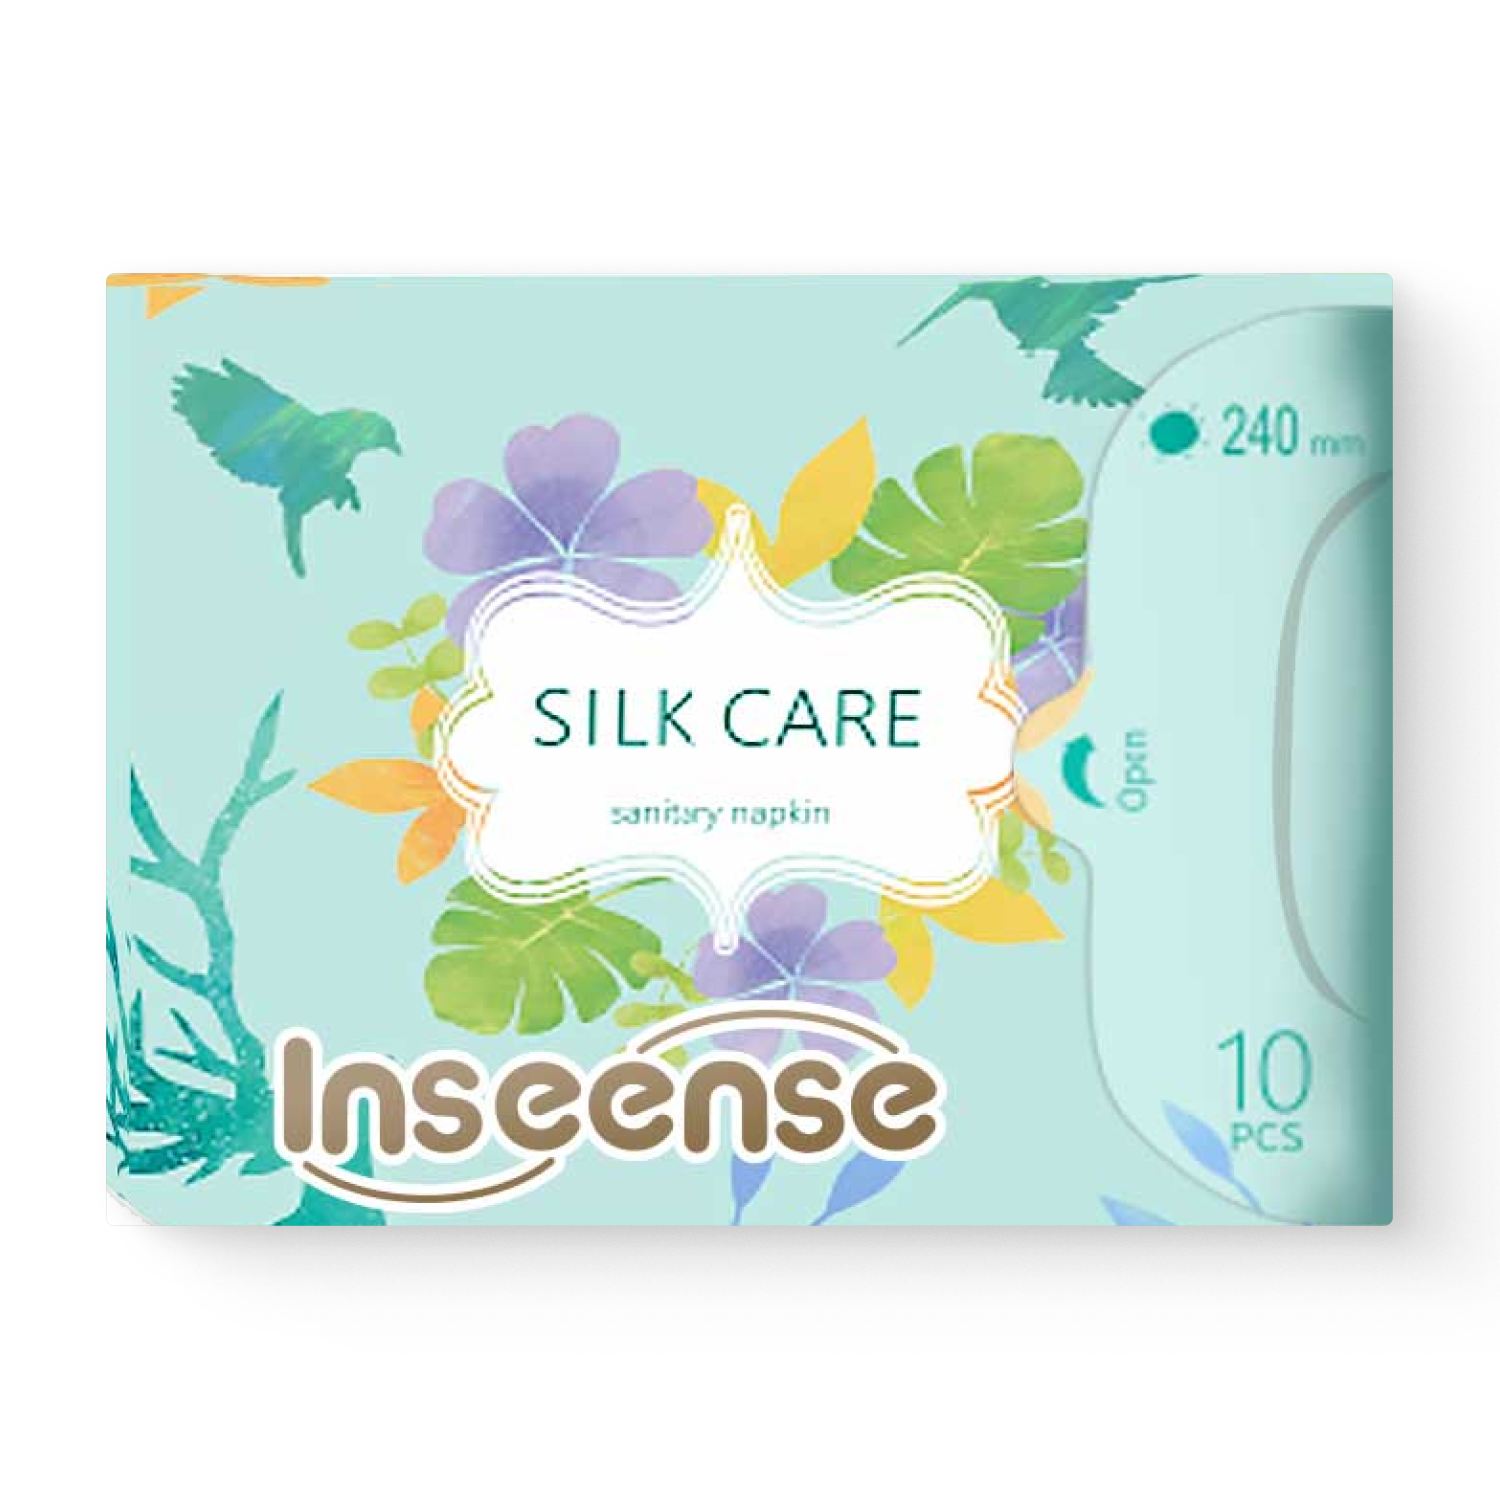 Прокладки INSEENSE Silk Care женские гигиенические дневные 4 капли 240 мм 10 шт.